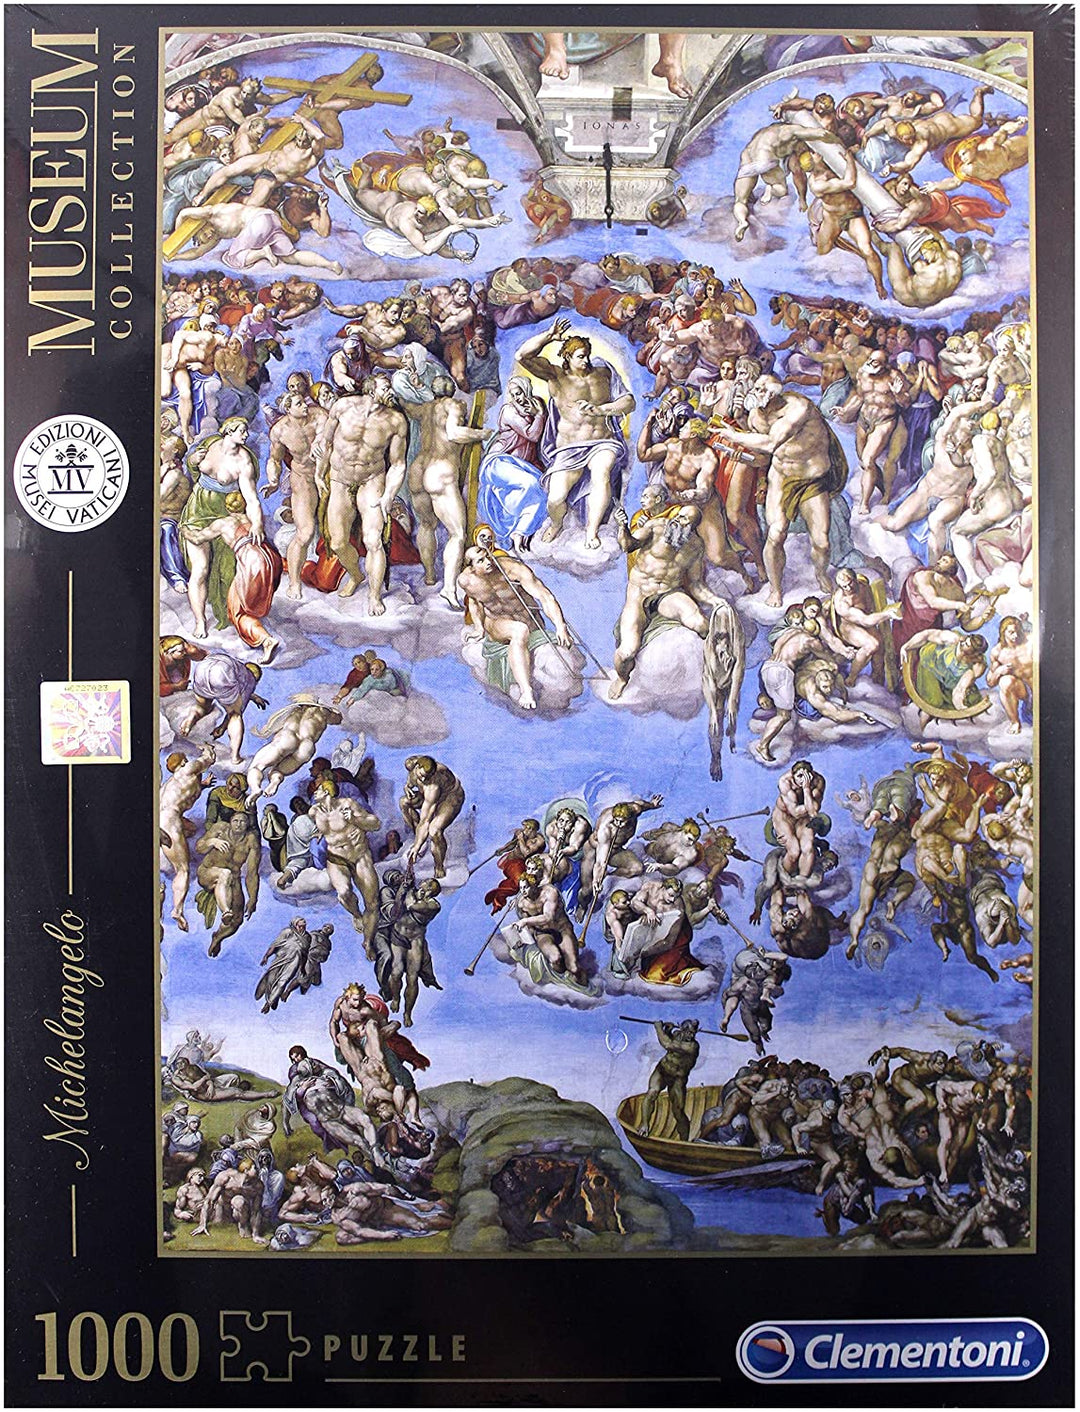 Clementoni - 39497 - Puzzle Vaticano Michelangelo Justicia Universal-1000 Piezas